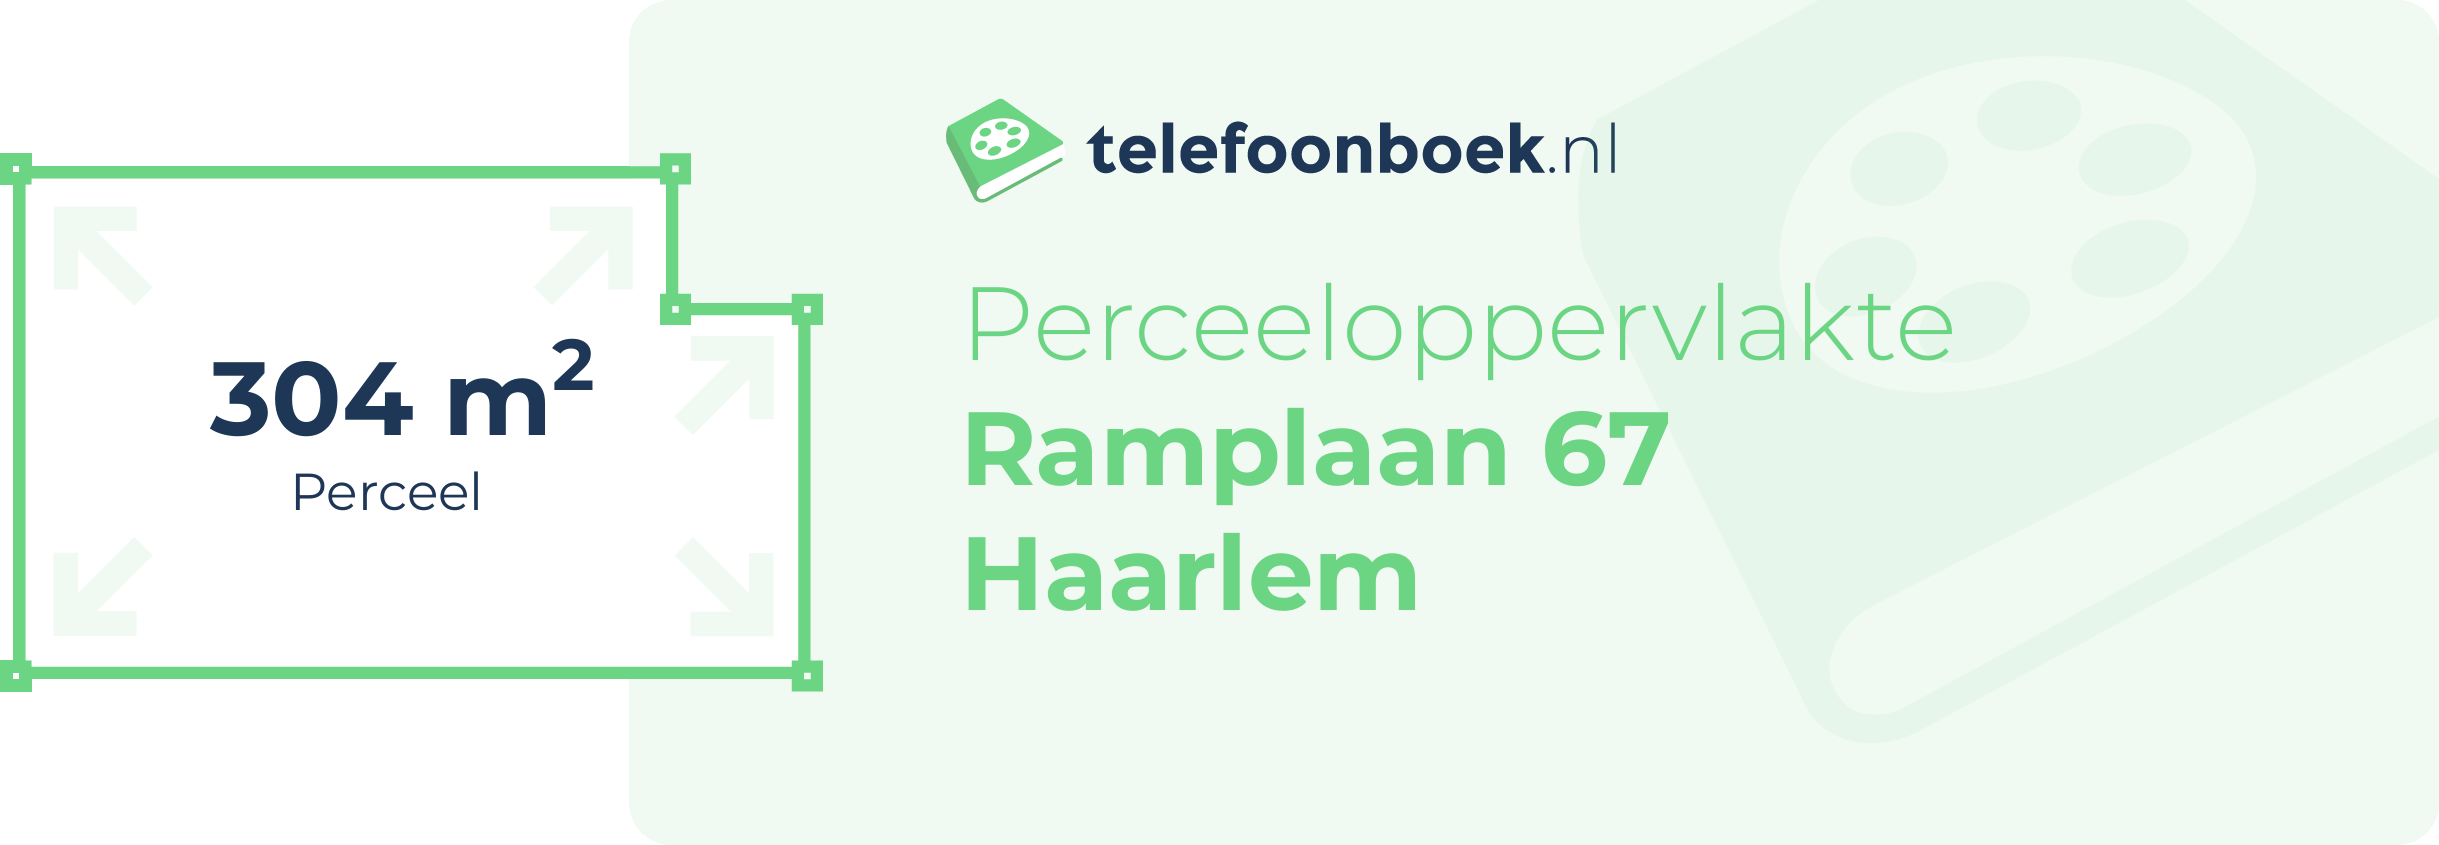 Perceeloppervlakte Ramplaan 67 Haarlem